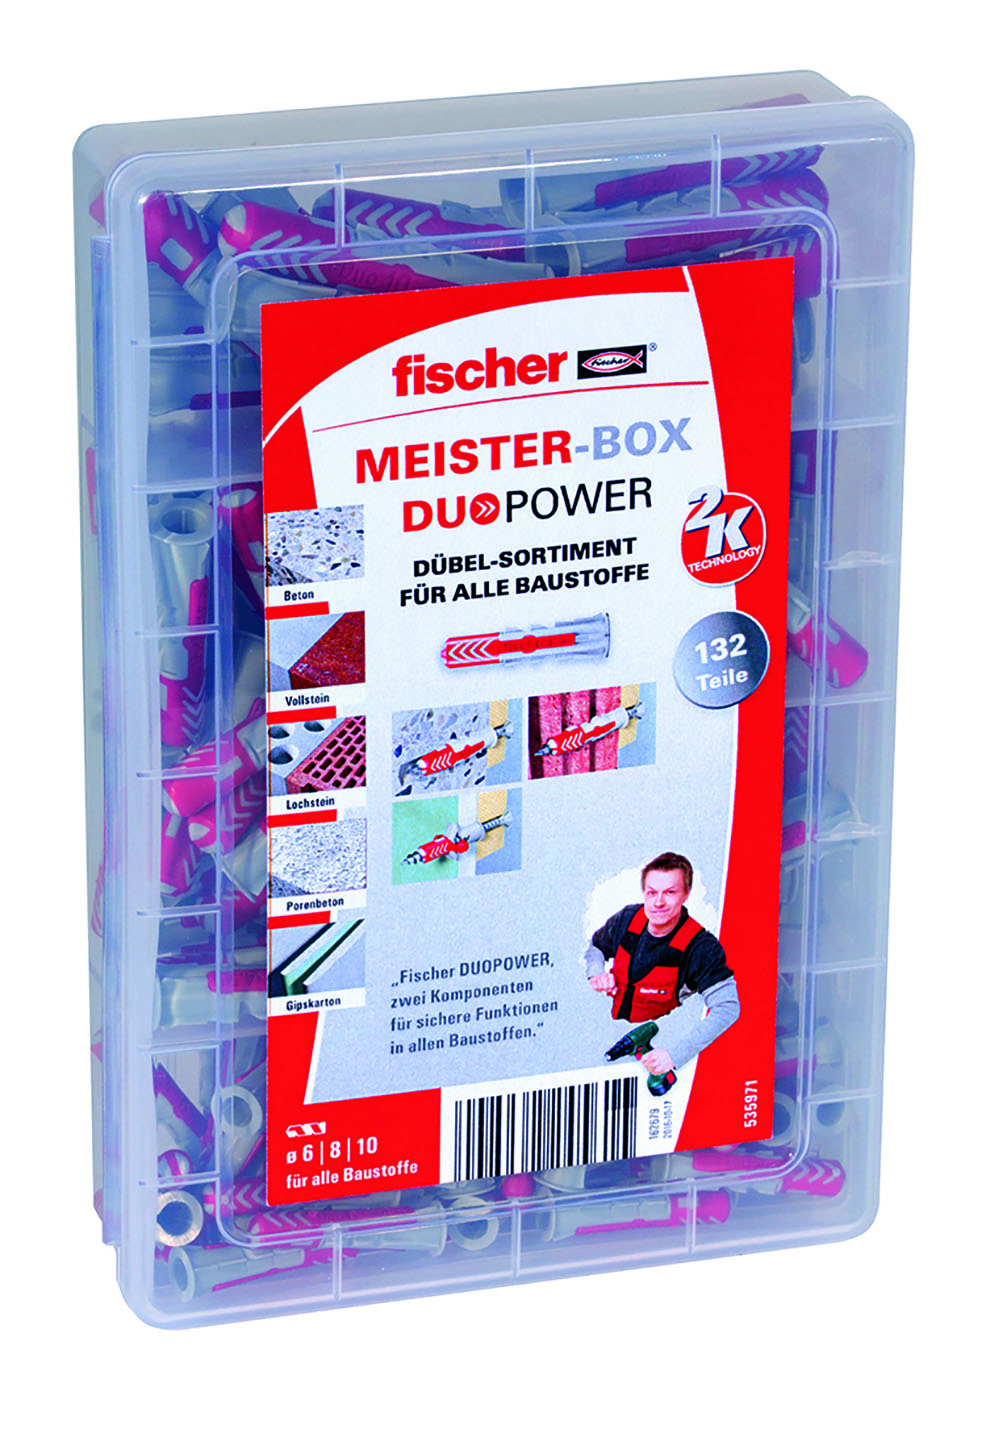 FISCHER Universaldübel Duopower sort. (132Stück) Meister-Box